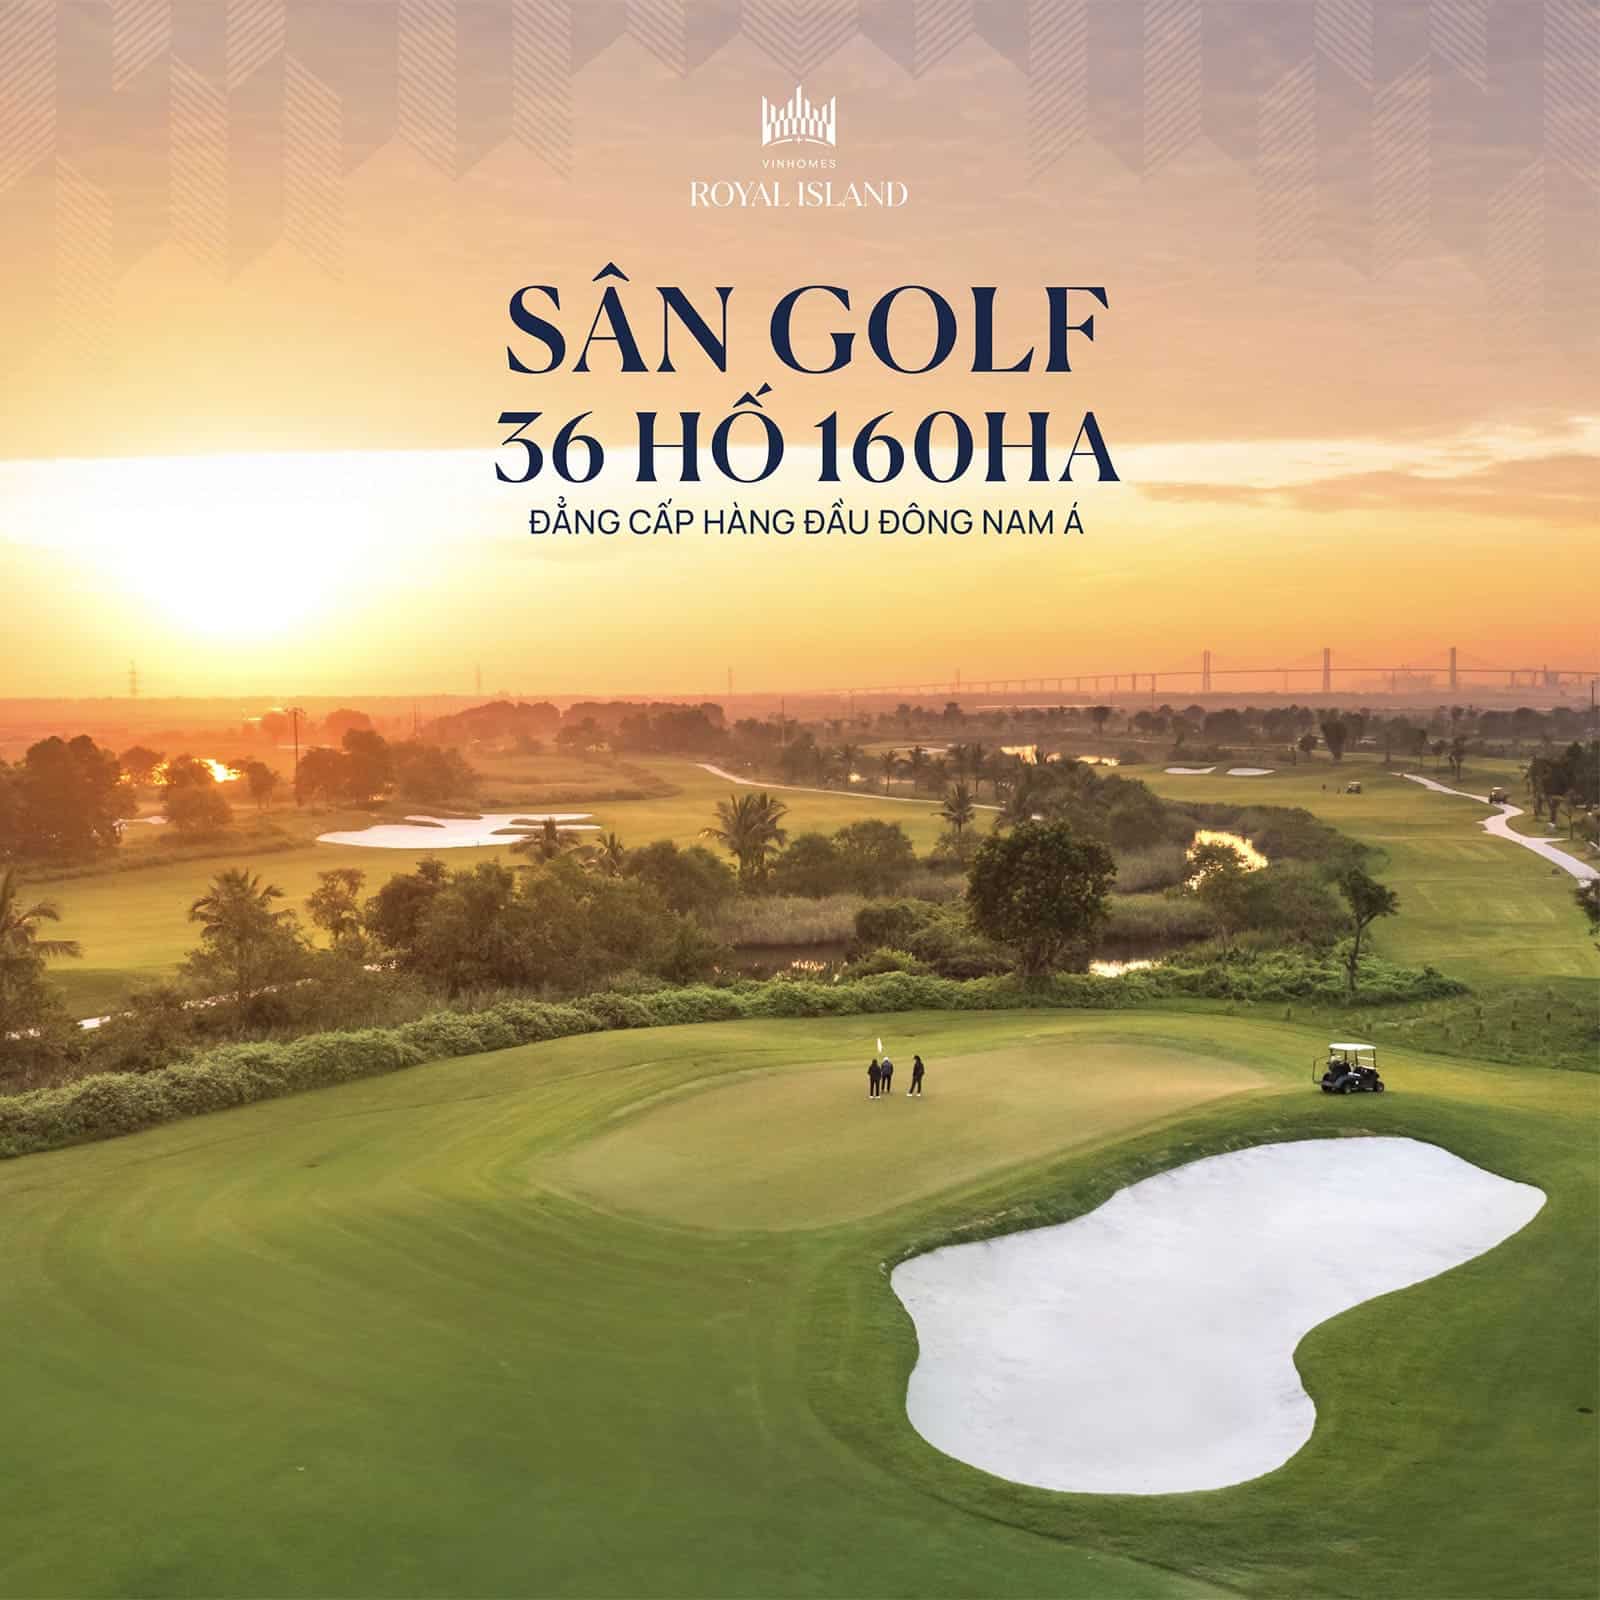 Tiện ích Sân golf 36 hố quy mô 160ha đẳng cấp hàng đầu Đông Nam Á tại Vinhomes Royal Island.